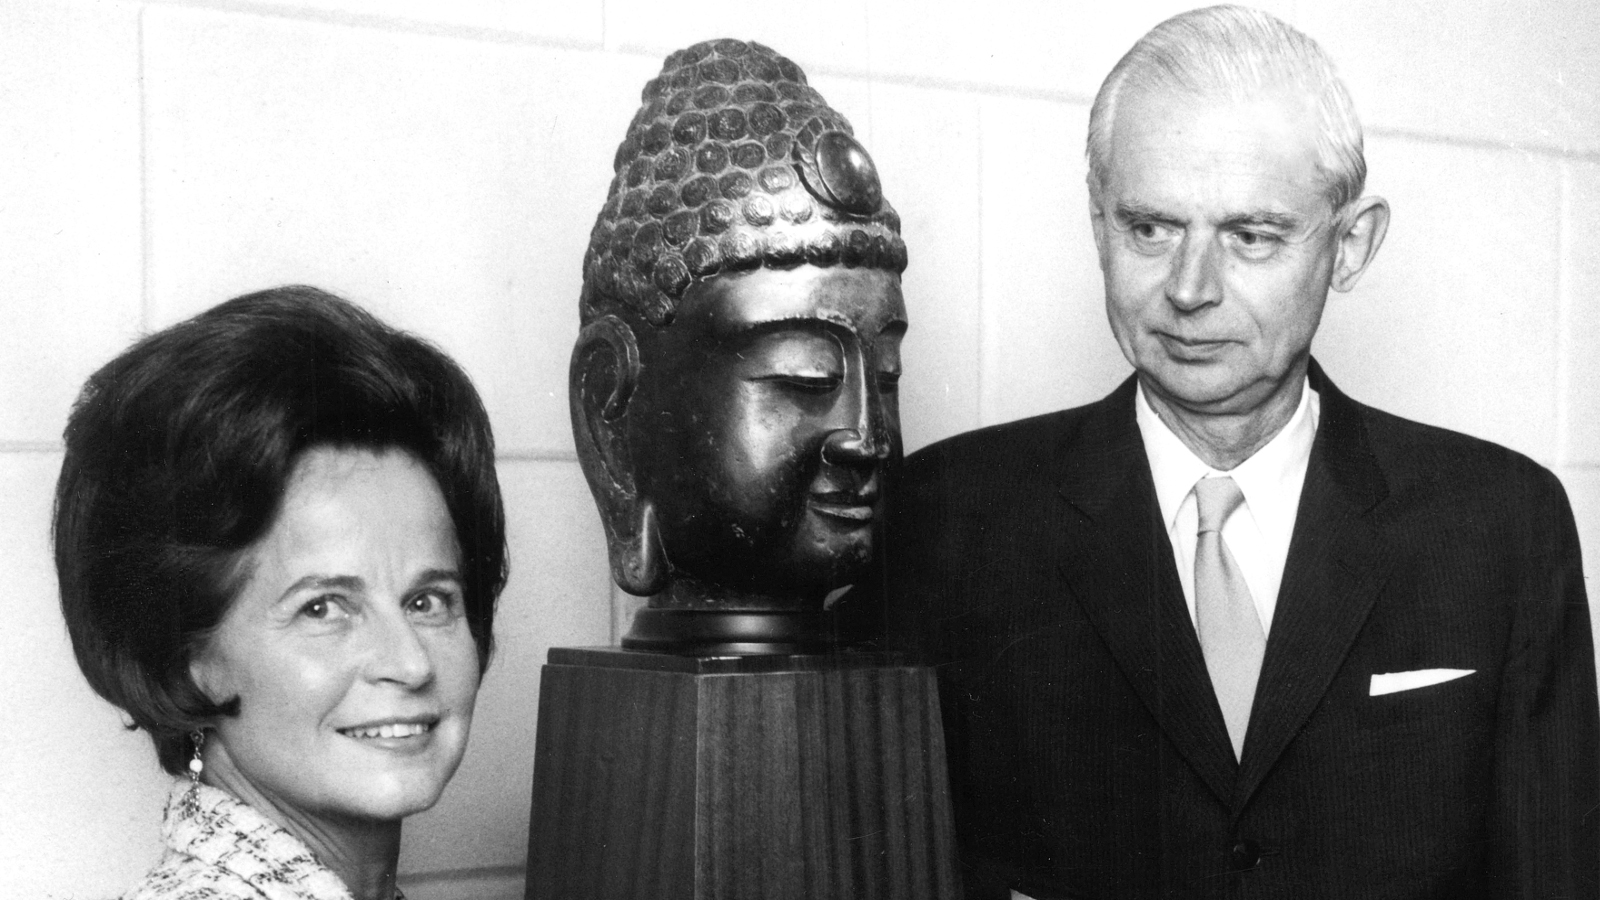 Kuvassa ovat Marie-Louise ja Gunnar Didrichsen buddhan päätä esittävän patsaan vierellä. Kuva on musta-valkoinen.